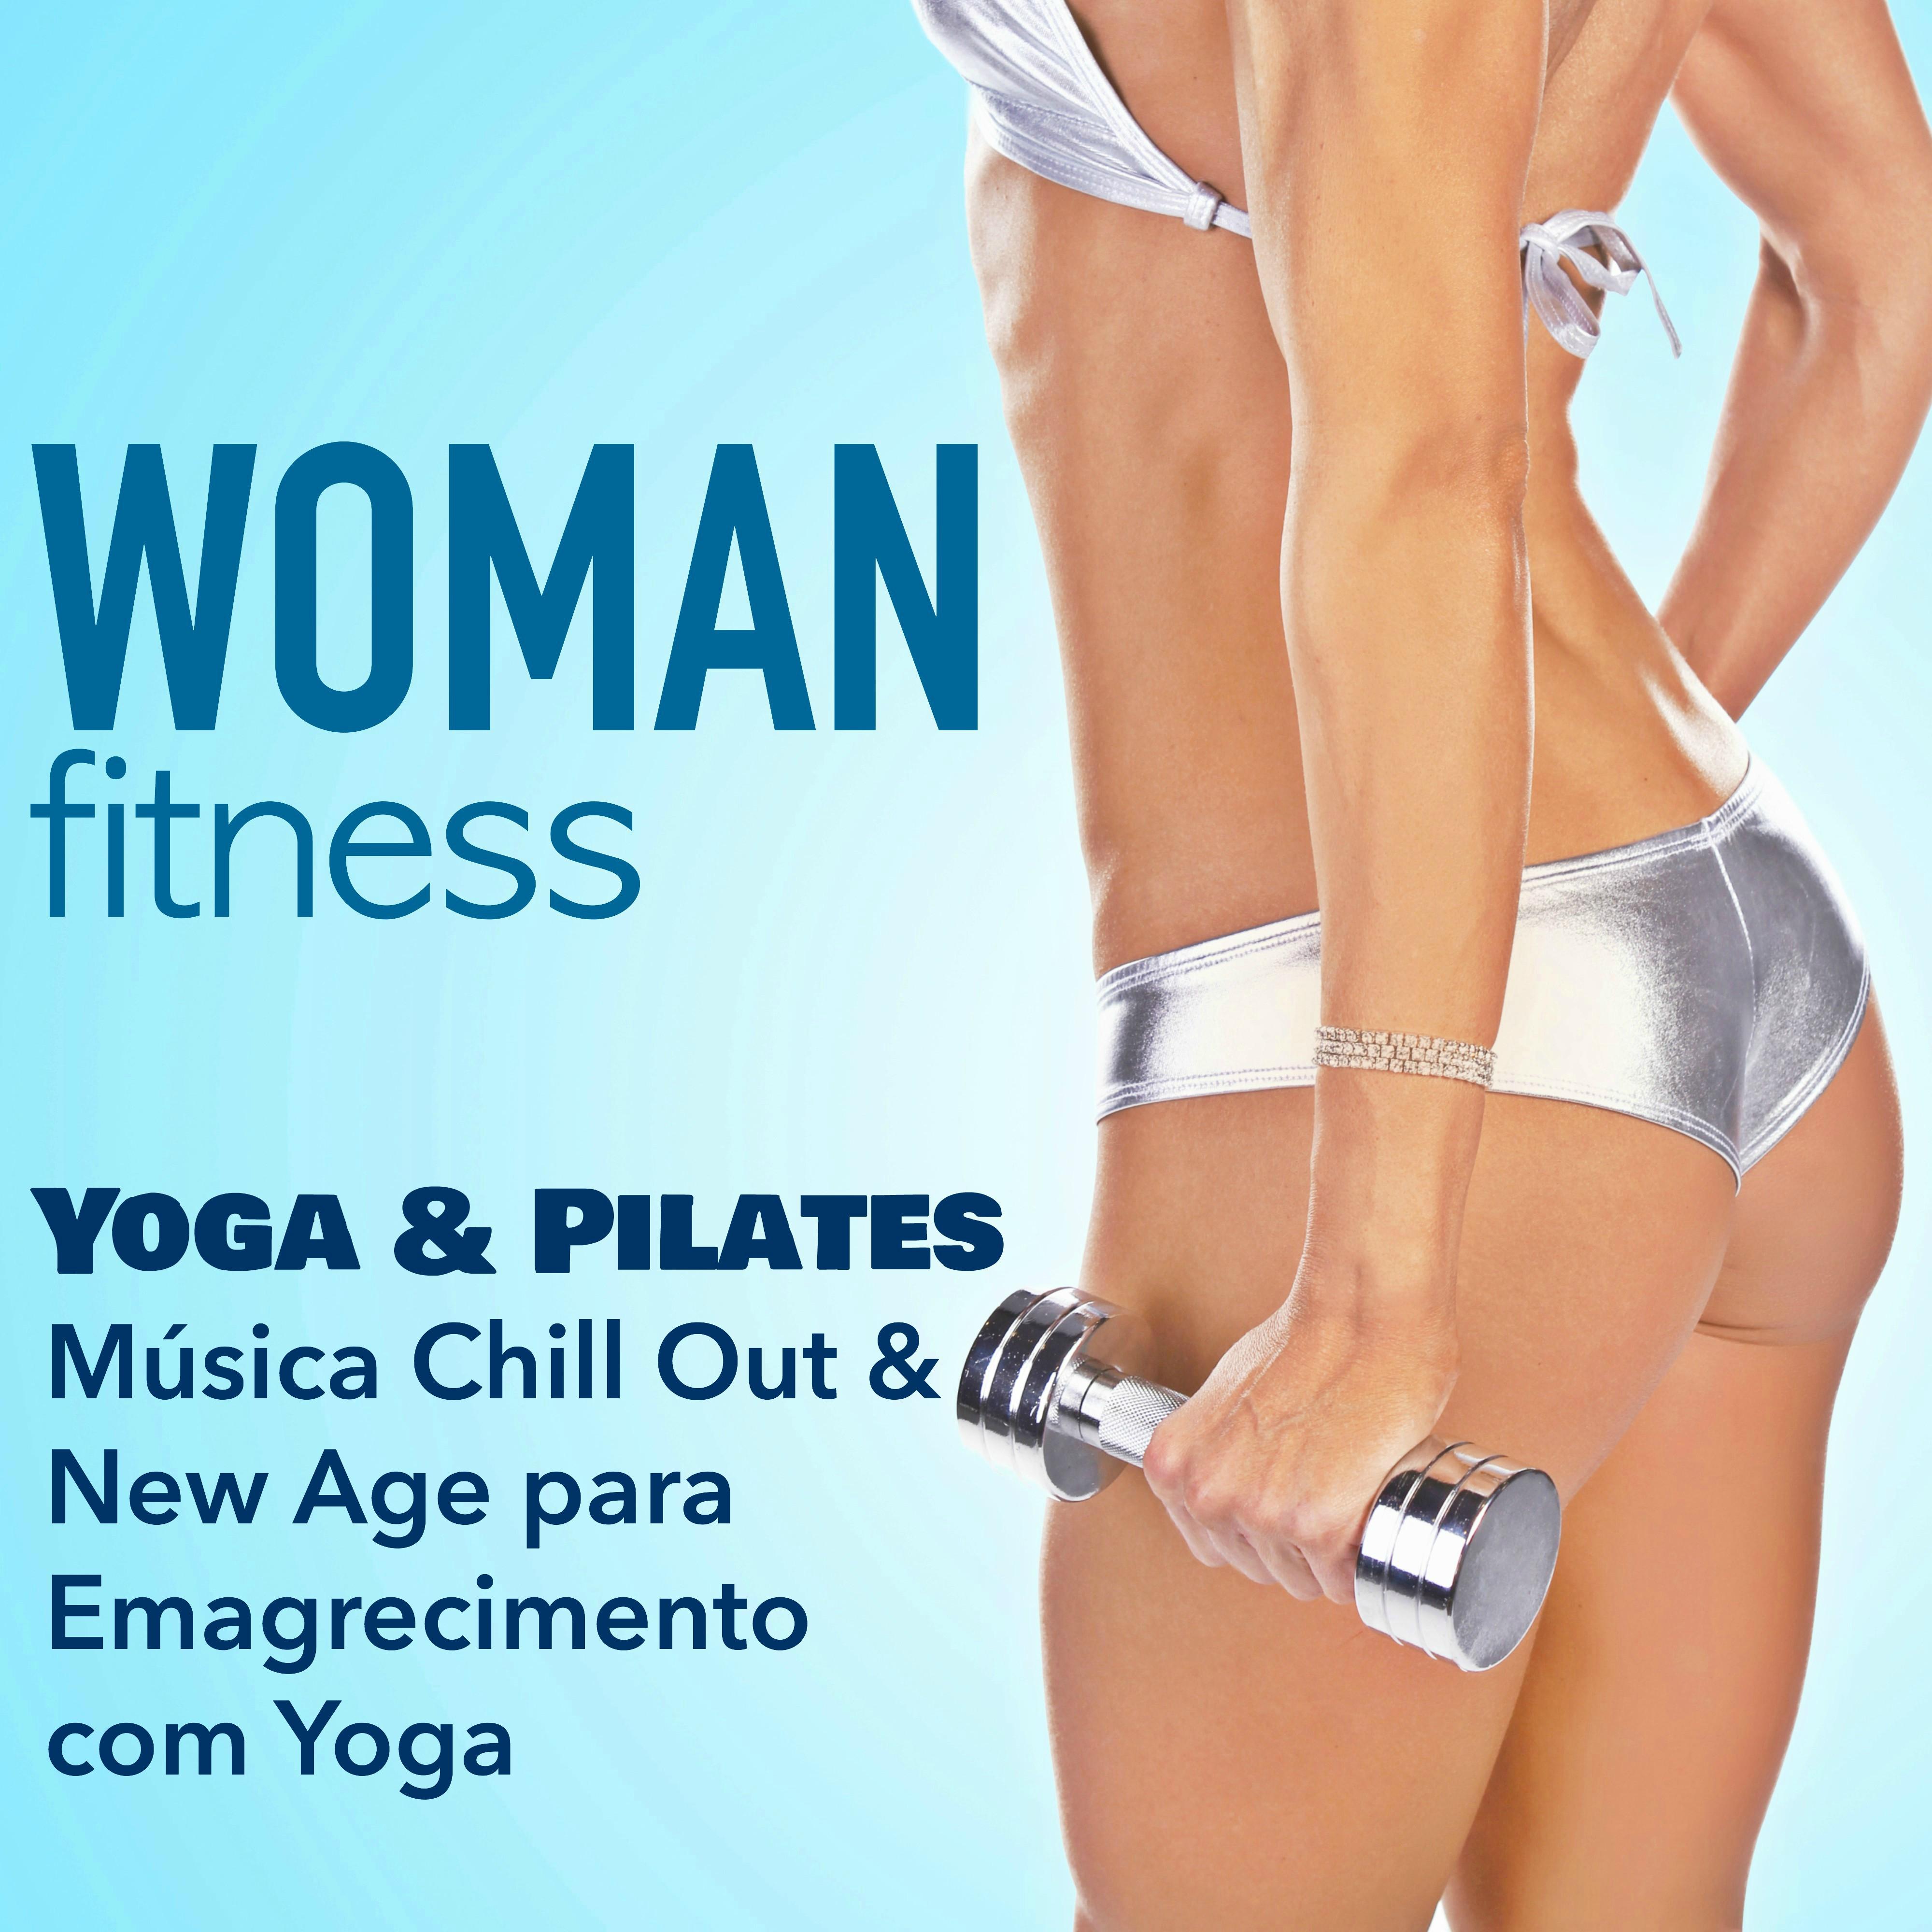 Woman Fitness - Aula de Yoga e Pilates: Música Chill Out & New Age para Emagrecimento com Yoga & Treino Fitness